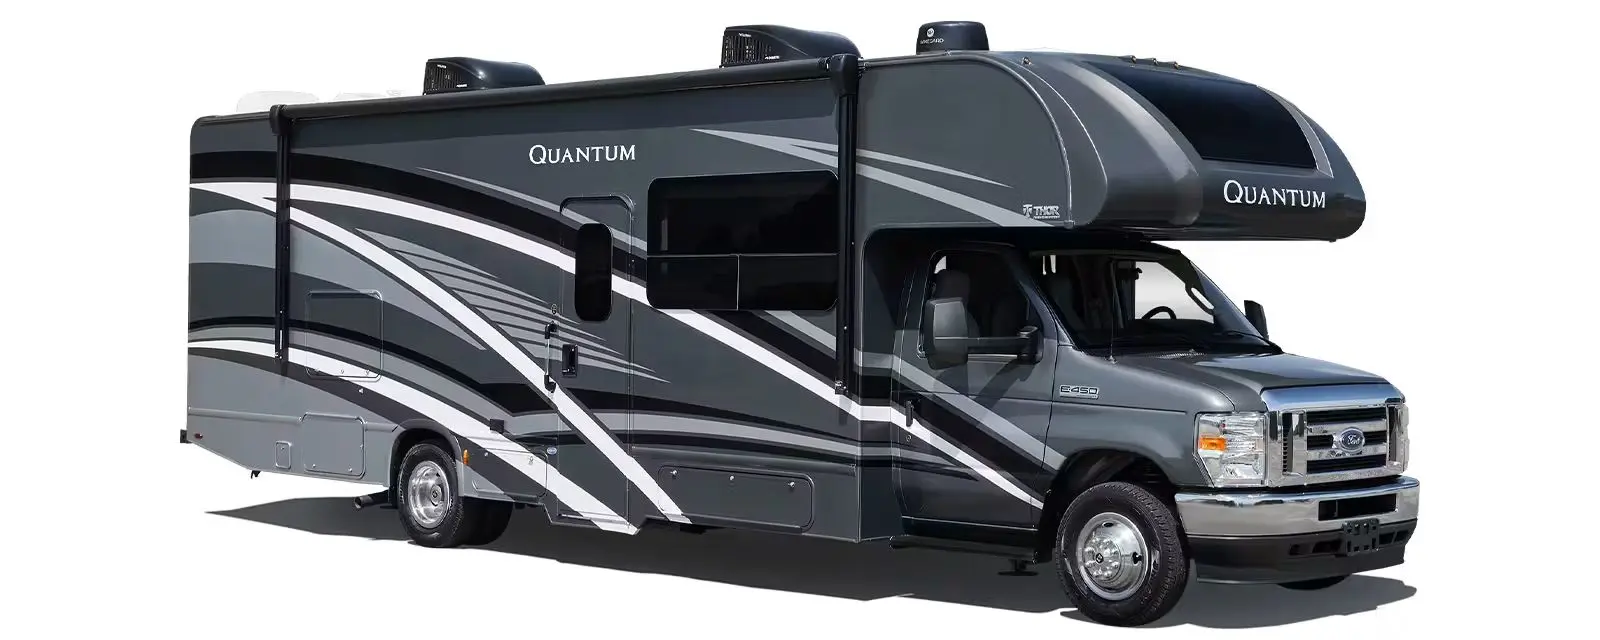 Quantum Class C Motor Home